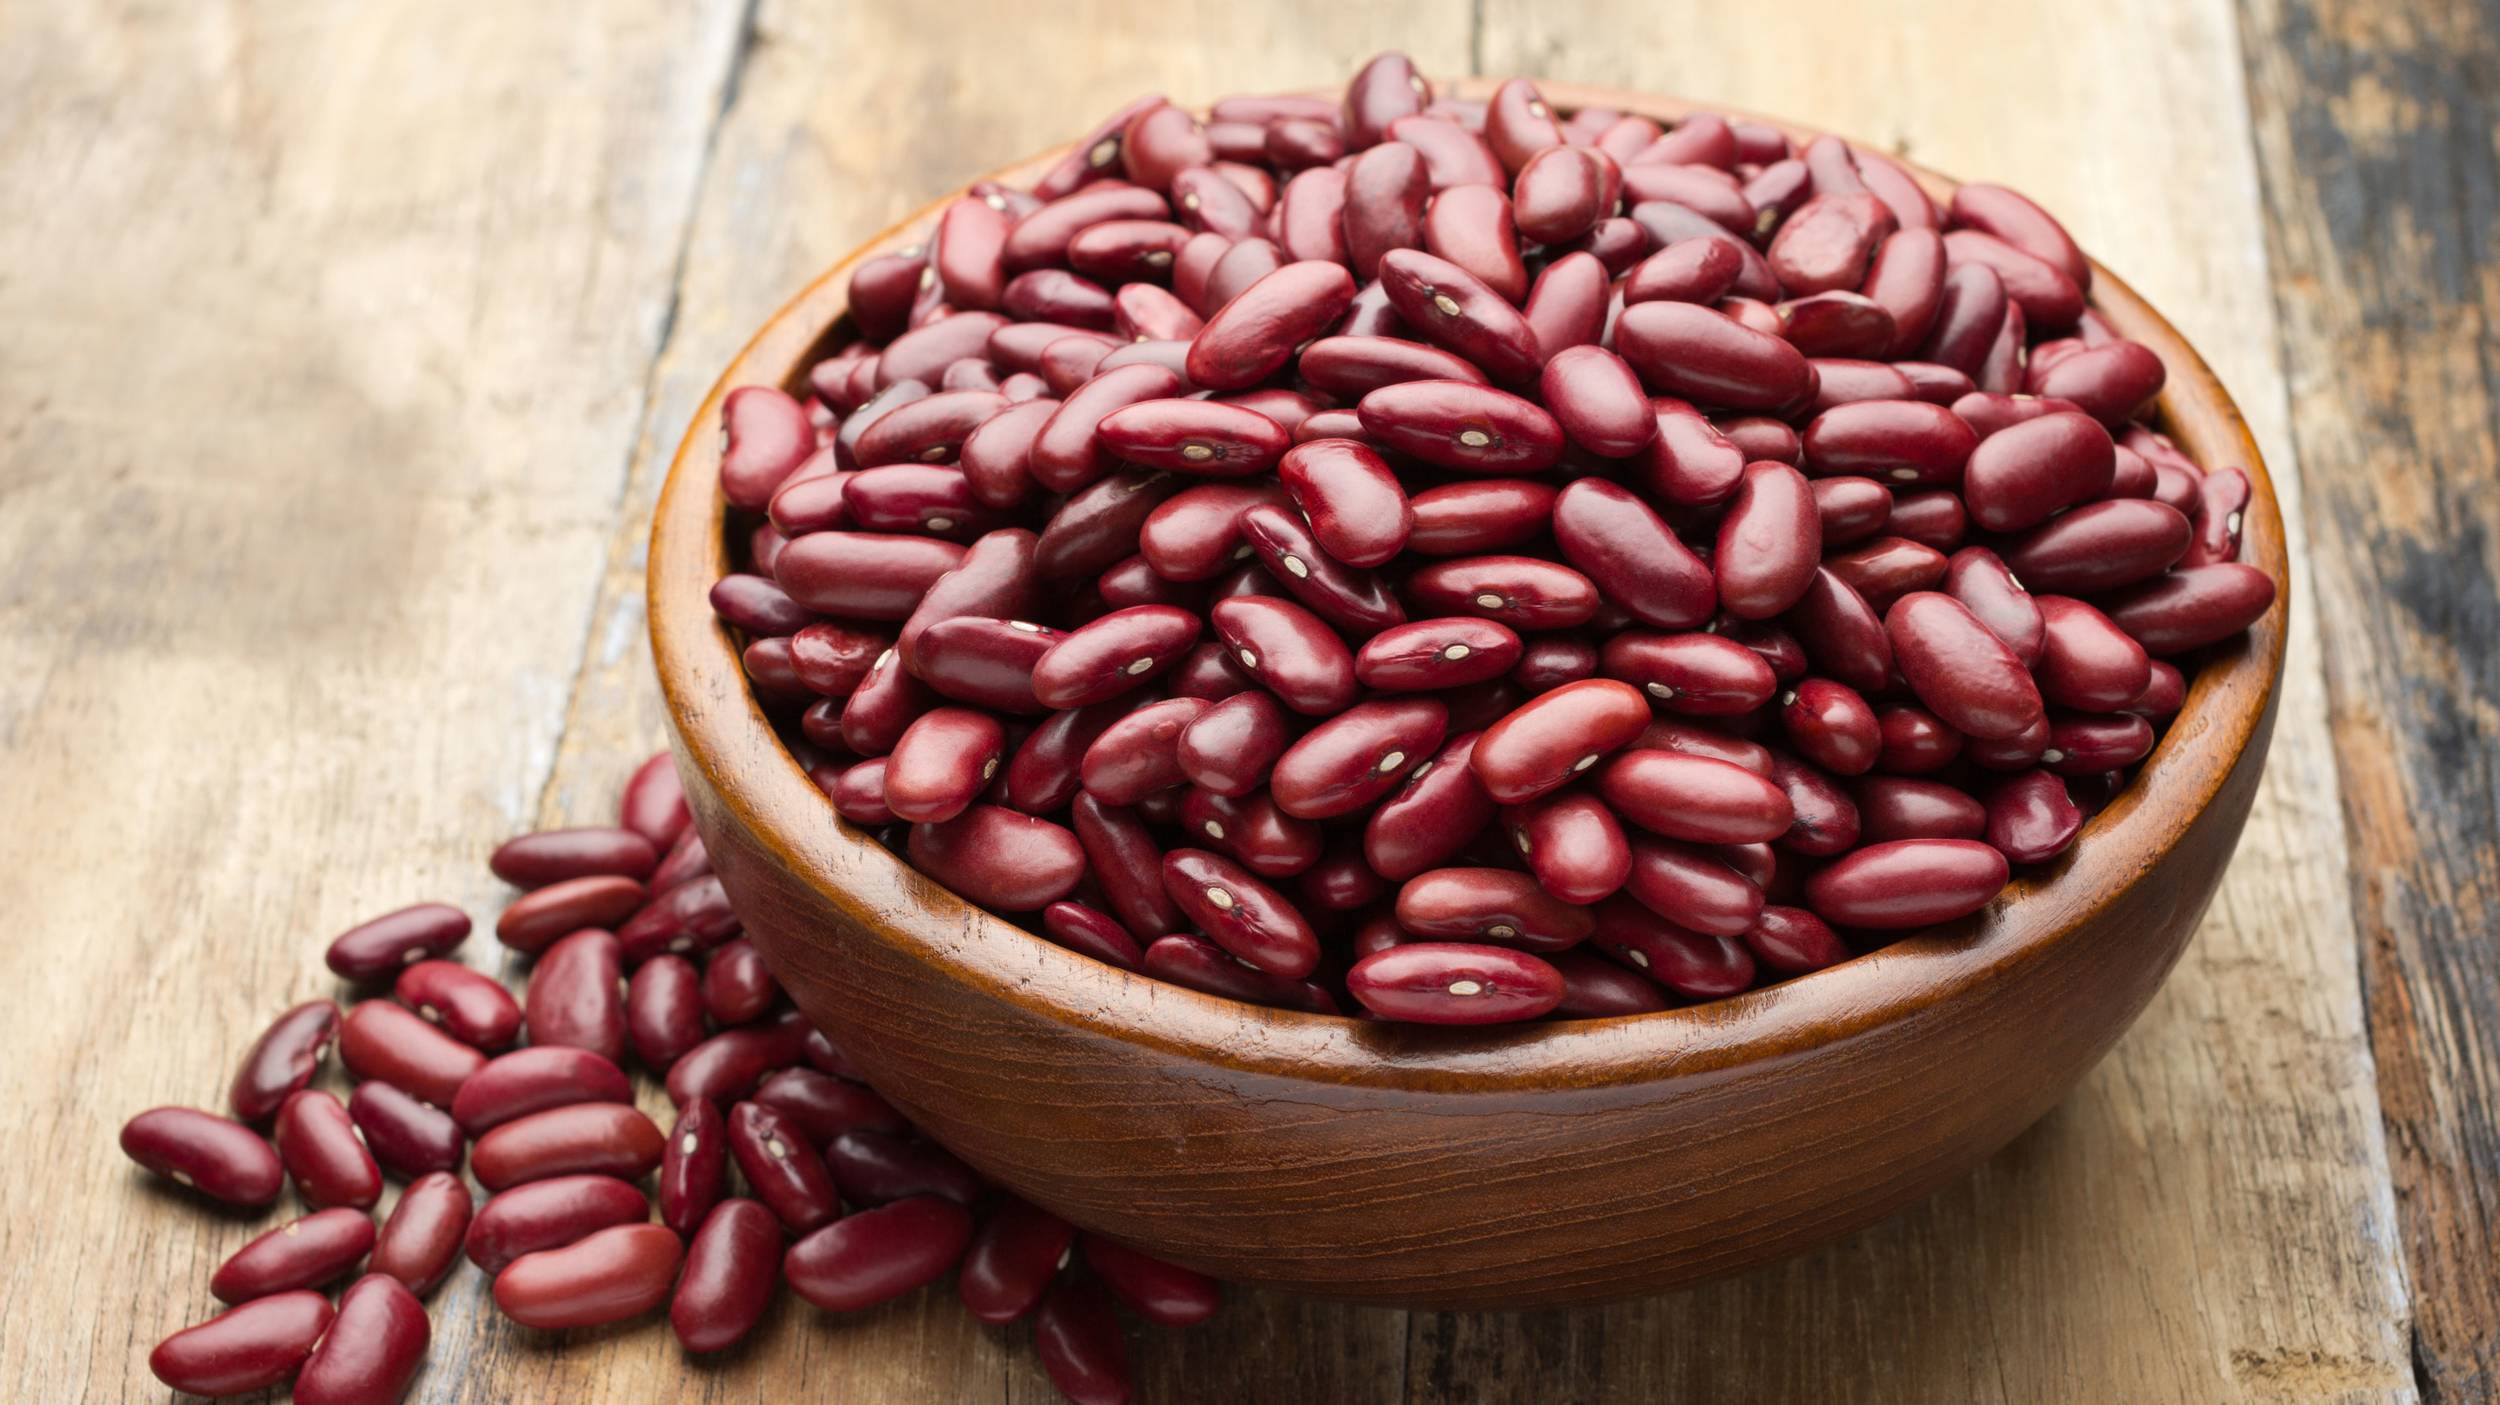 Los porotos arriñonados rojo oscuro son una buena fuente de proteínas vegetales y una excelente fuente de fibra.